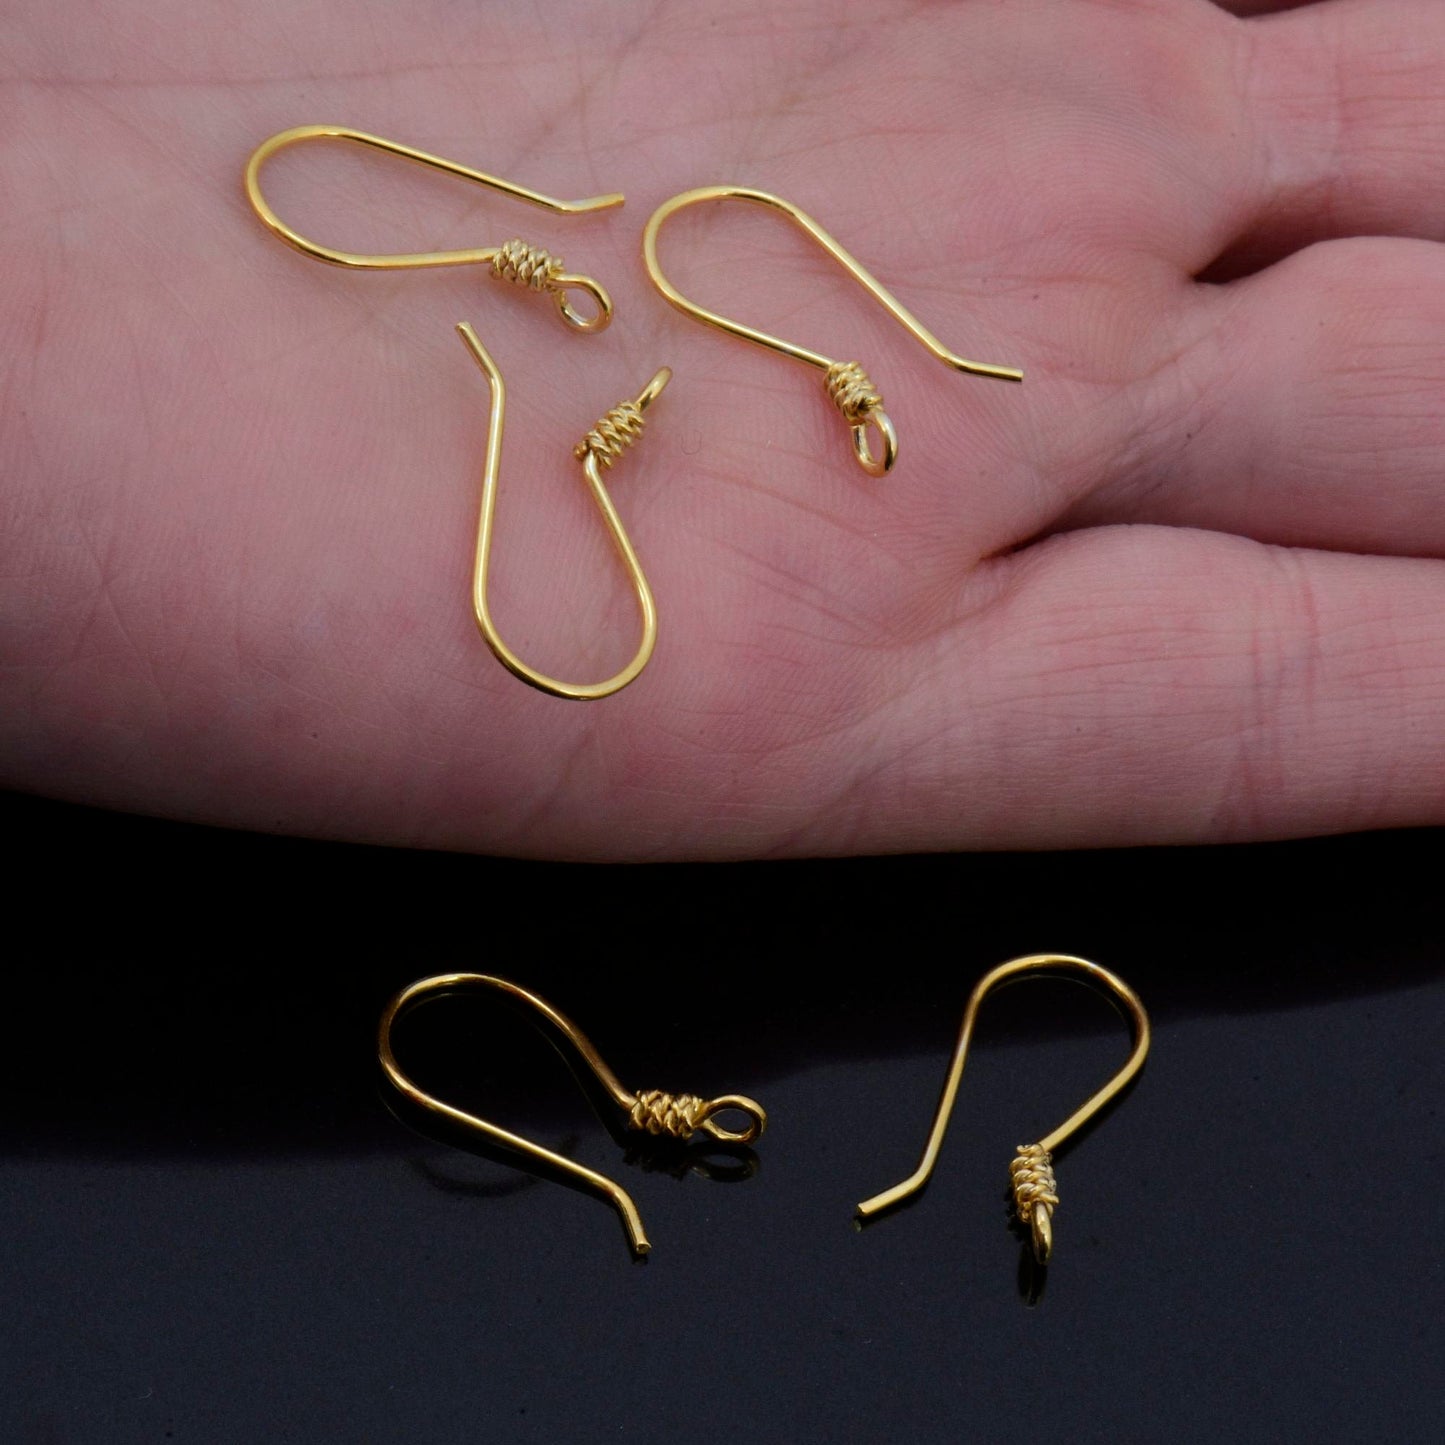 24K Gold Vermeil Earrings, Plated Earring Hooks, 925 Silver Helix Earrings, Earring Making Supply, Jewelry Making Findings, M45/VM45